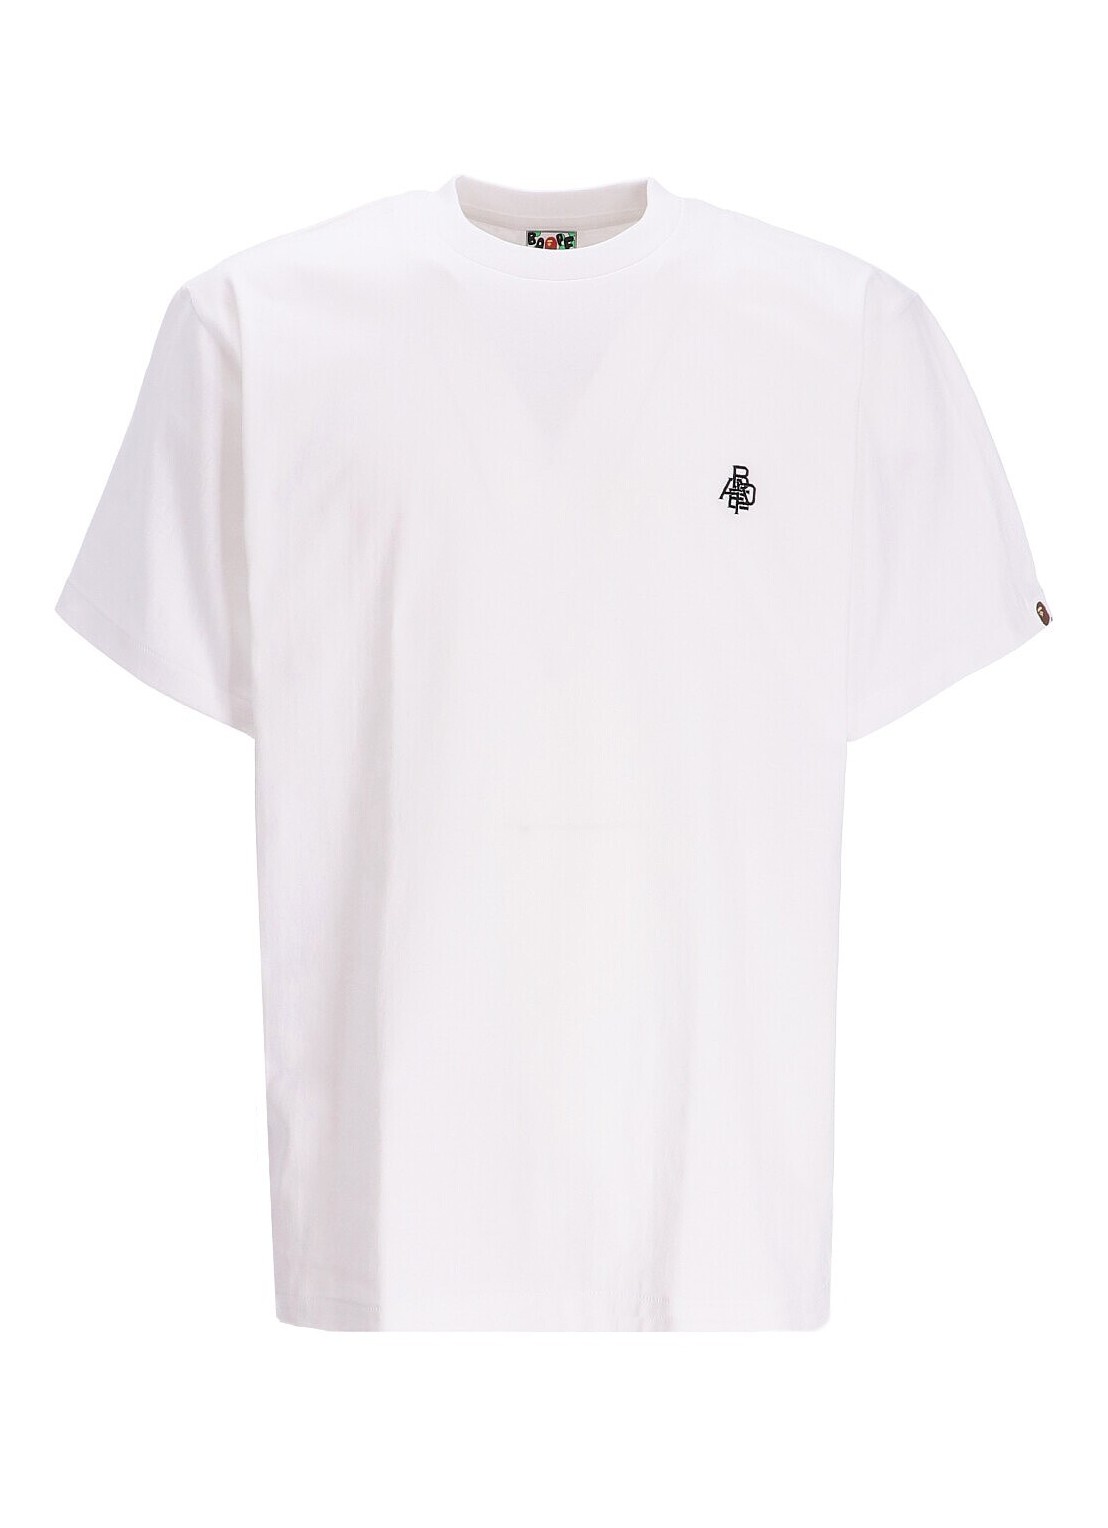 Camiseta bape t-shirt man bape logo one point tee m 001tei801072m white talla 3XL
 